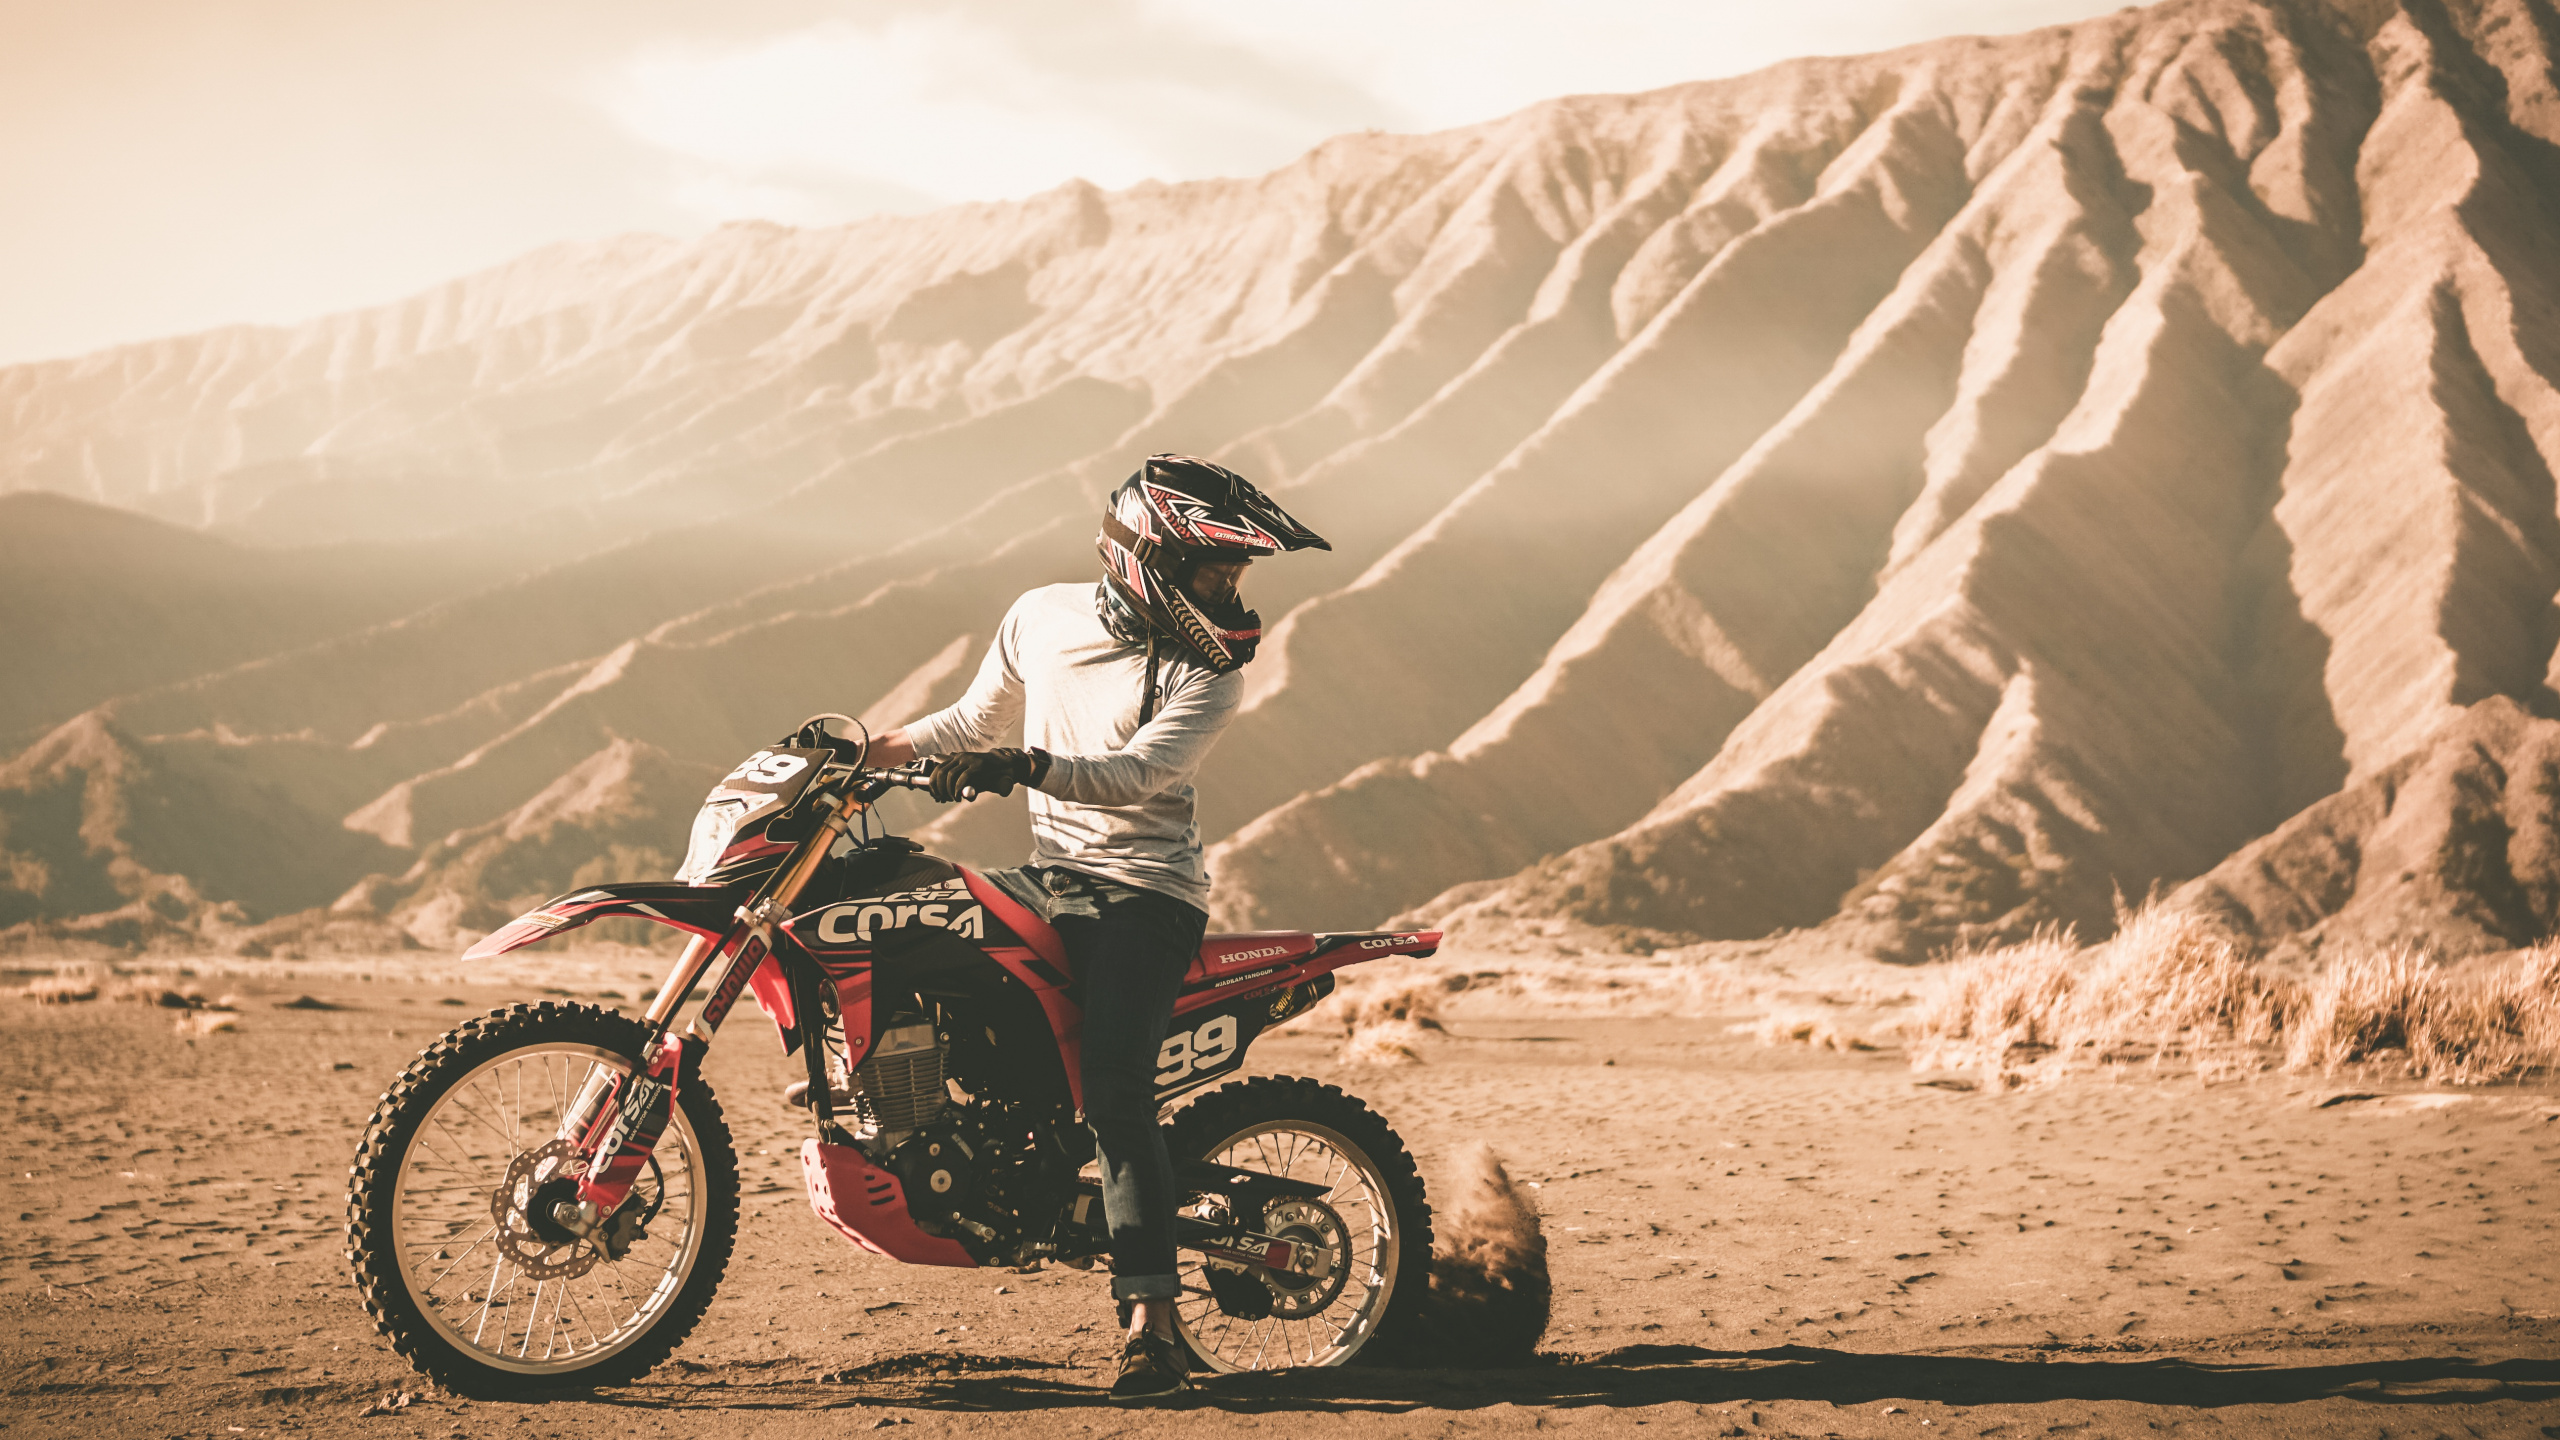 Man Riding Motocross Dirt Bike Sur Chemin de Terre Pendant la Journée. Wallpaper in 2560x1440 Resolution